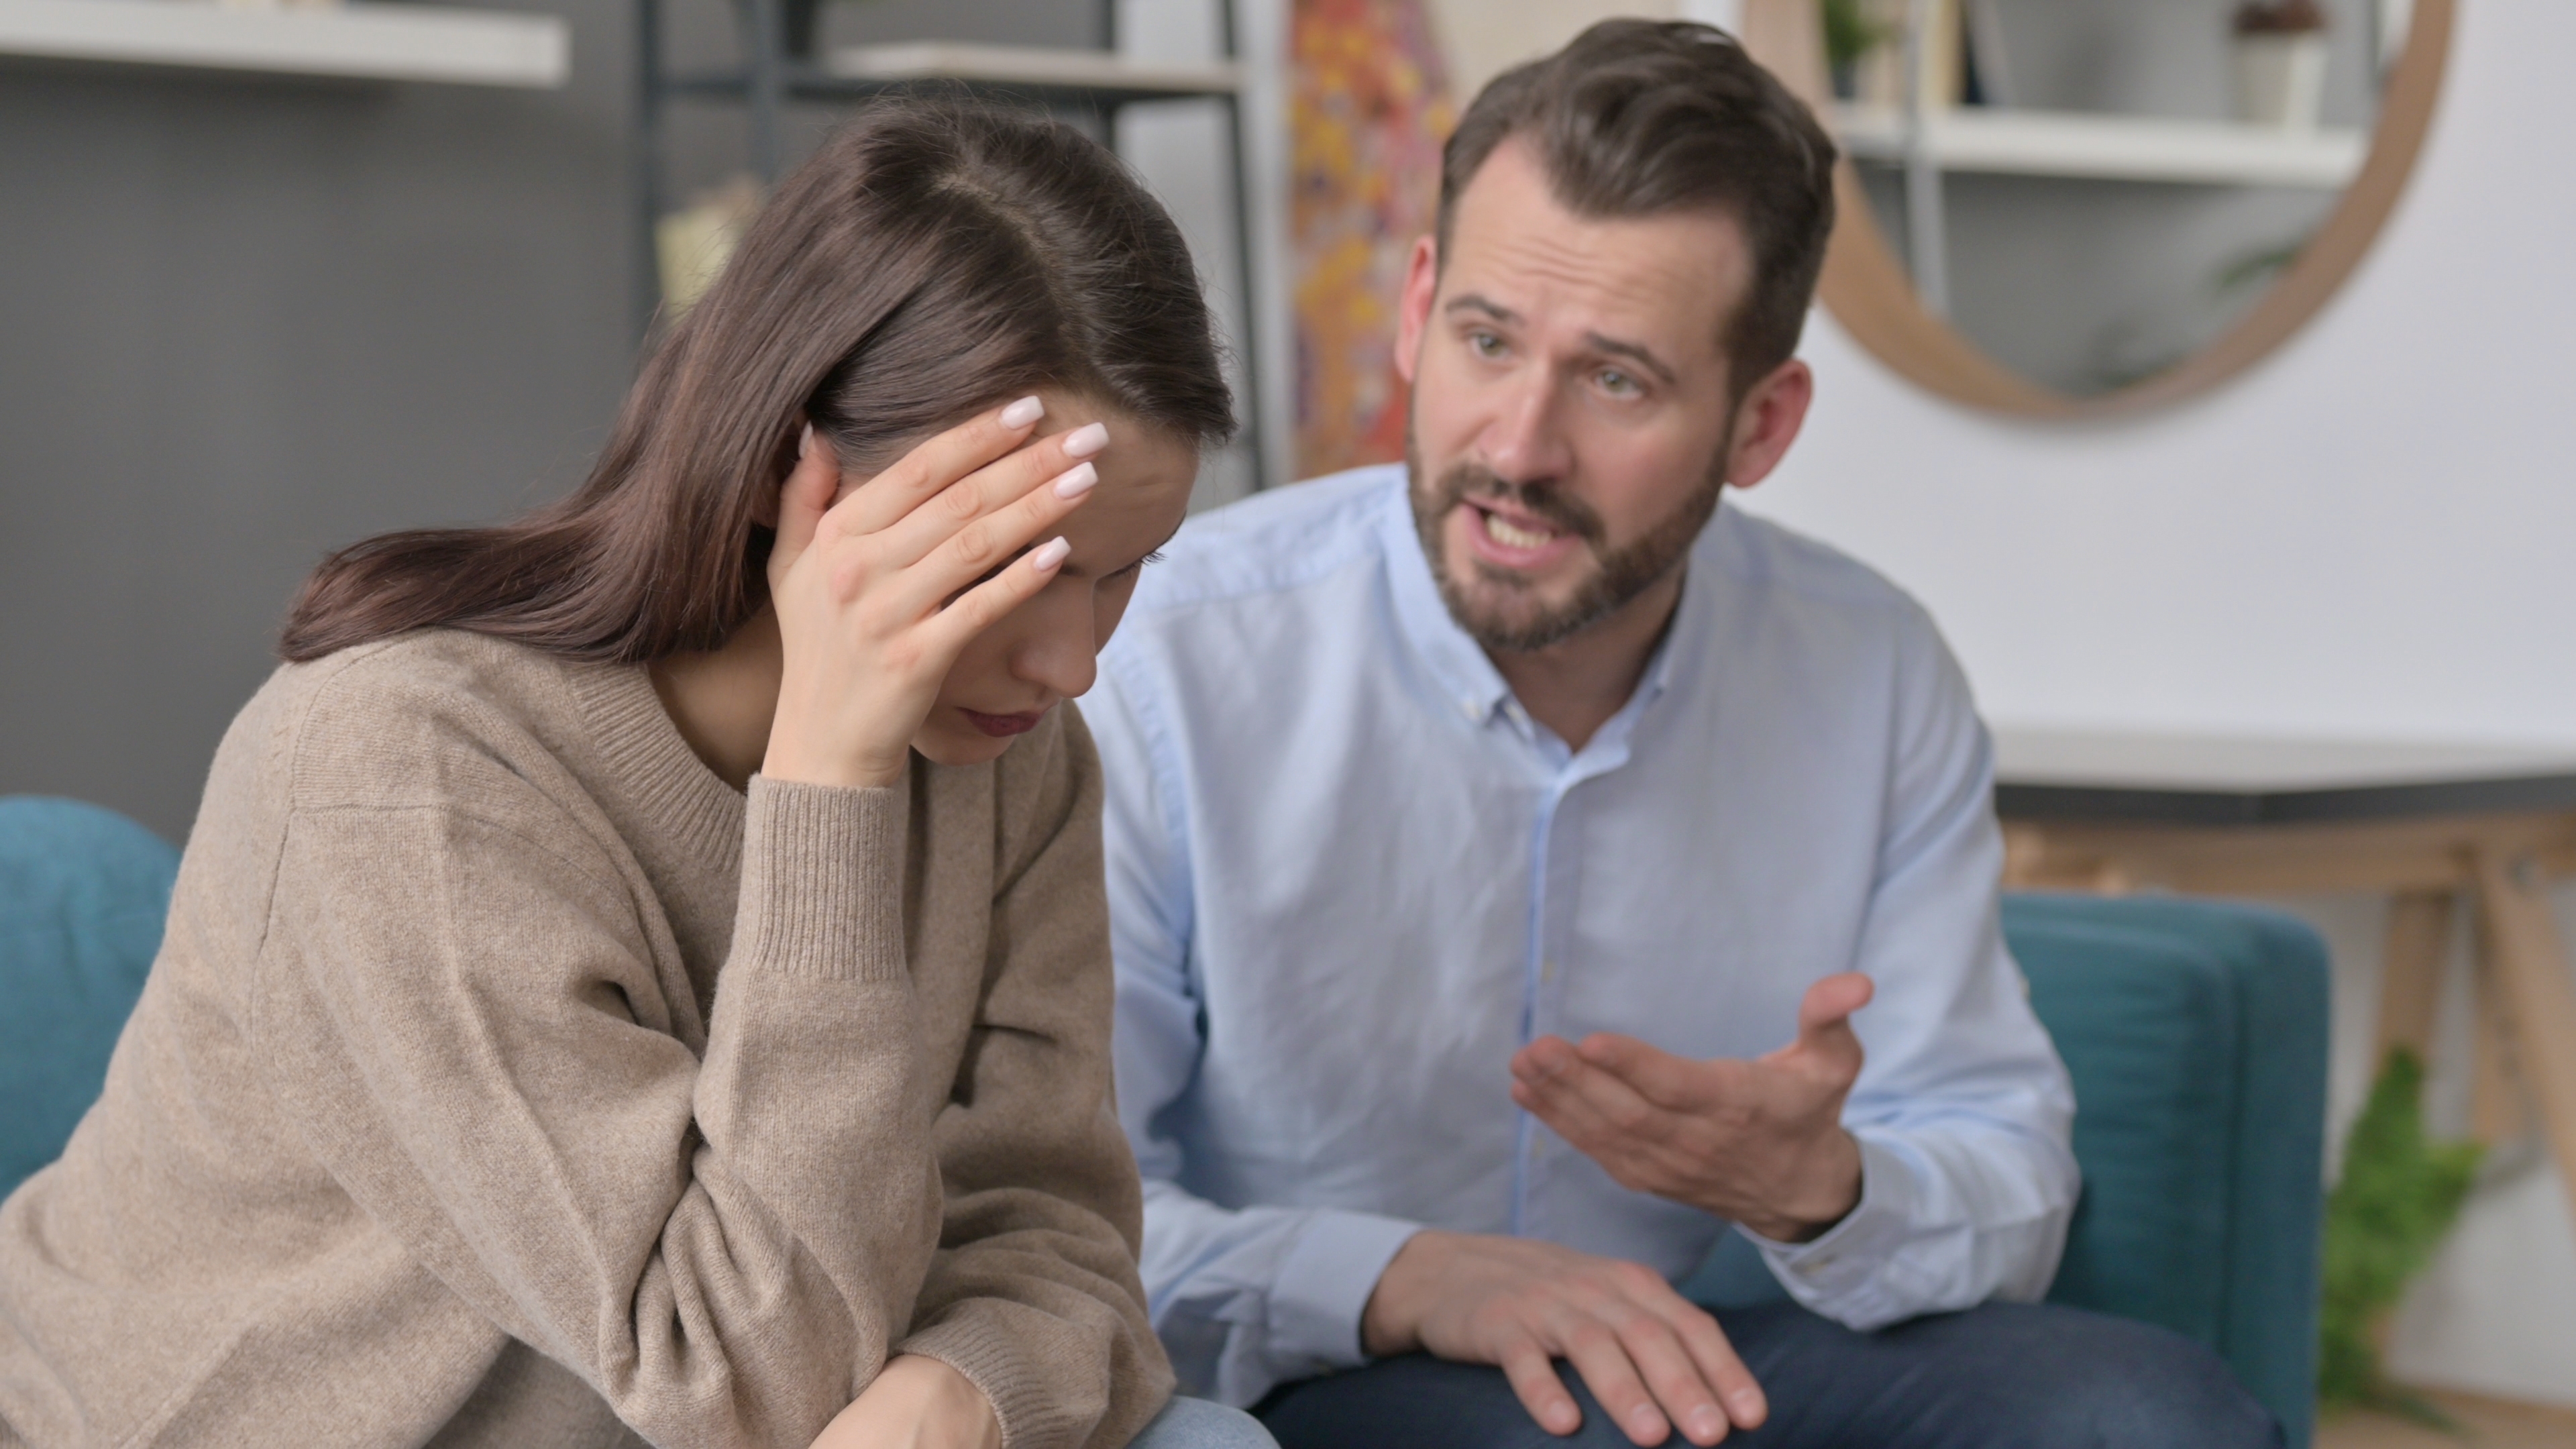 Une femme se sent stressée pendant une dispute avec son mari | Source : Shutterstock